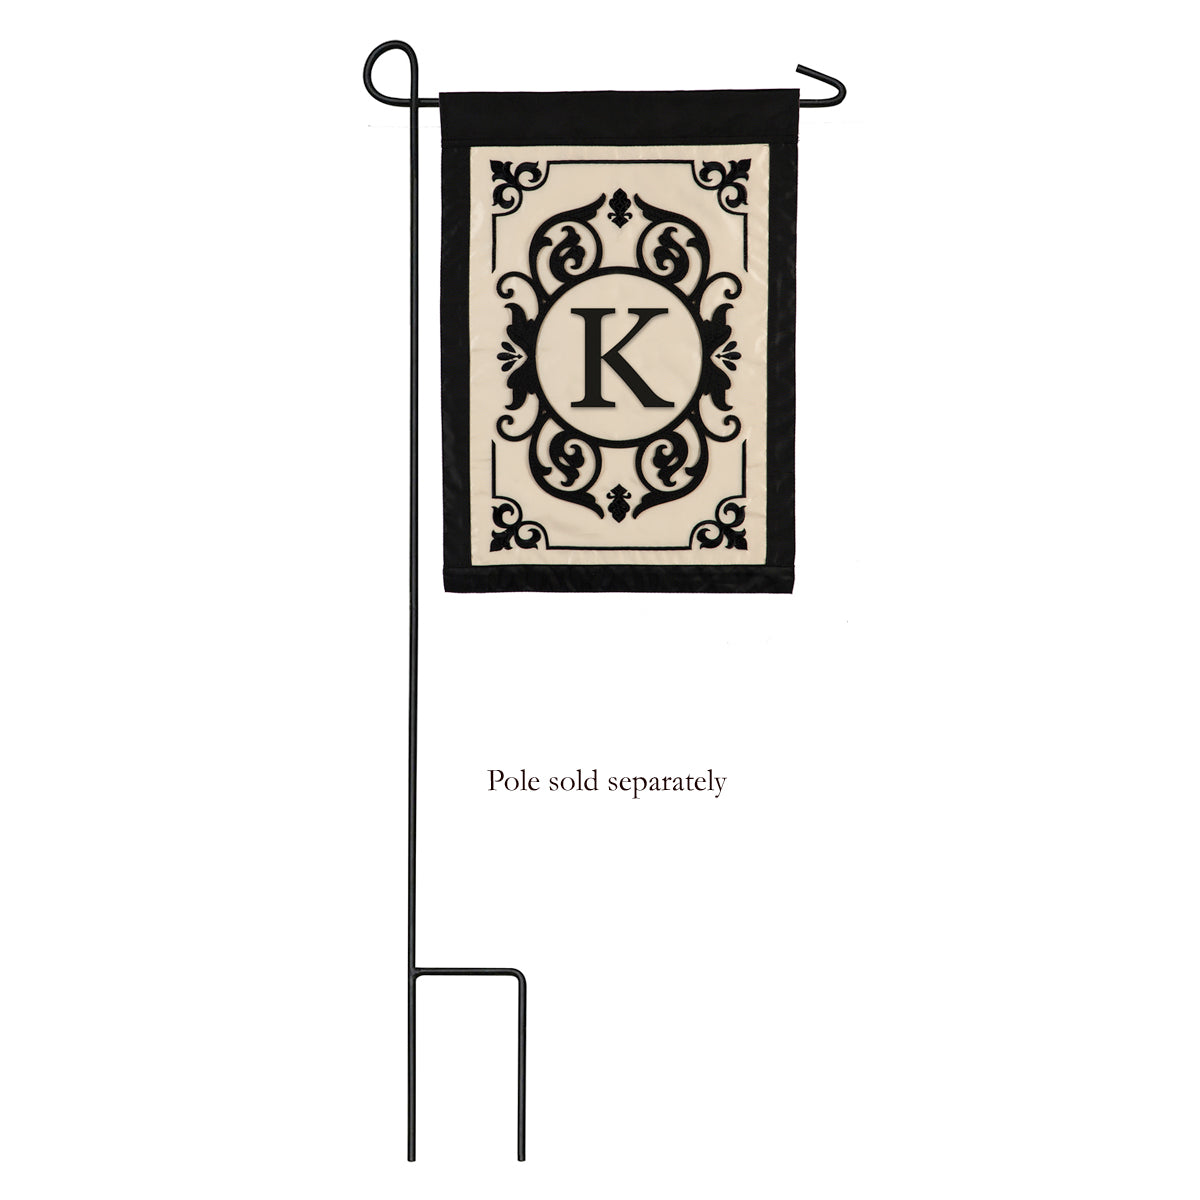 Cambridge Monogram Garden Applique Flag, "K"